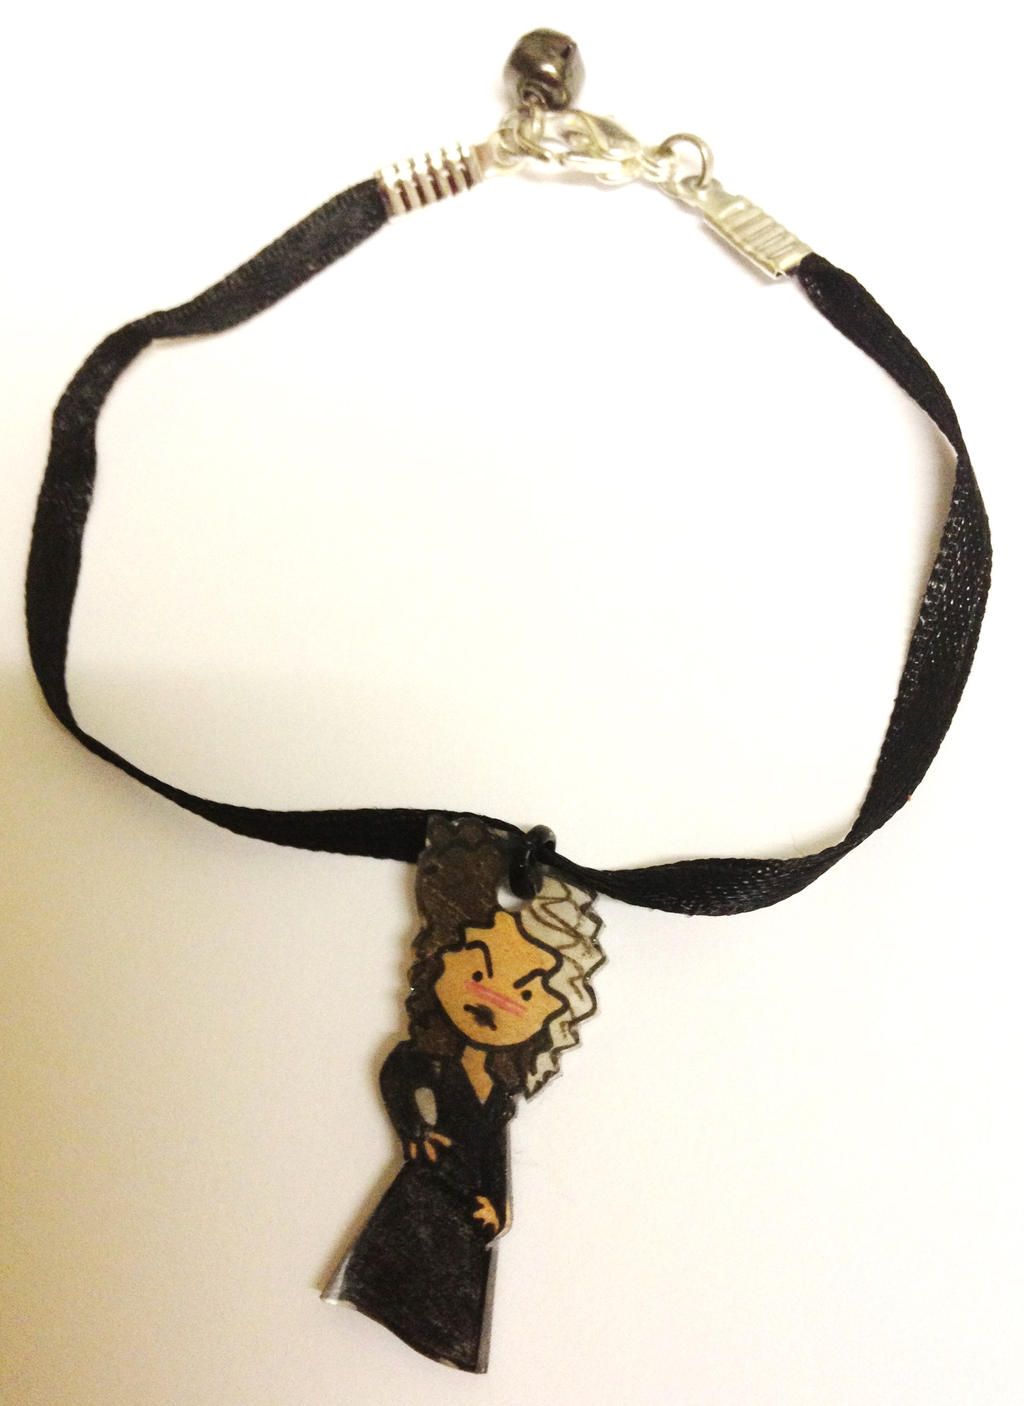 Kawaii Bellatrix Lestrange ribbon charm bracelet